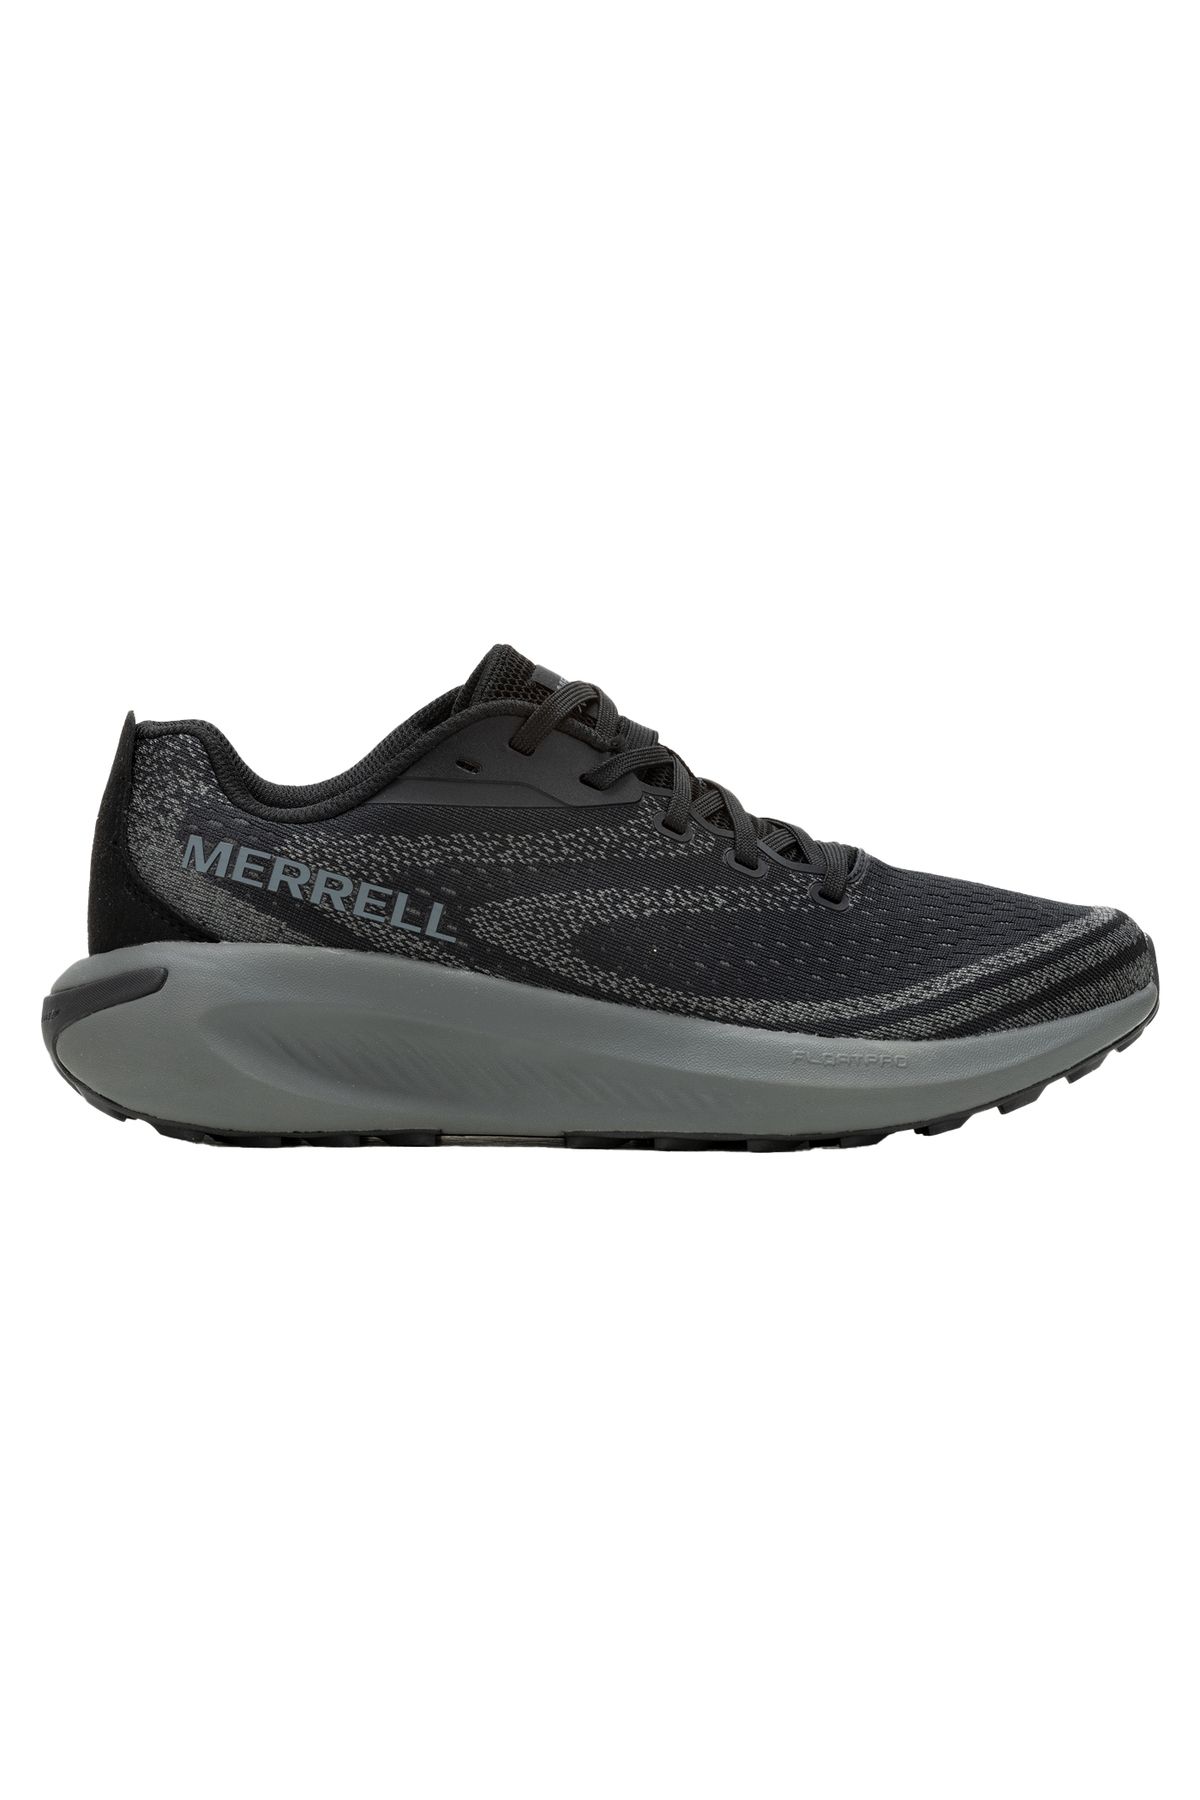 Merrell Morpholite Erkek Patika Koşu Ayakkabısı